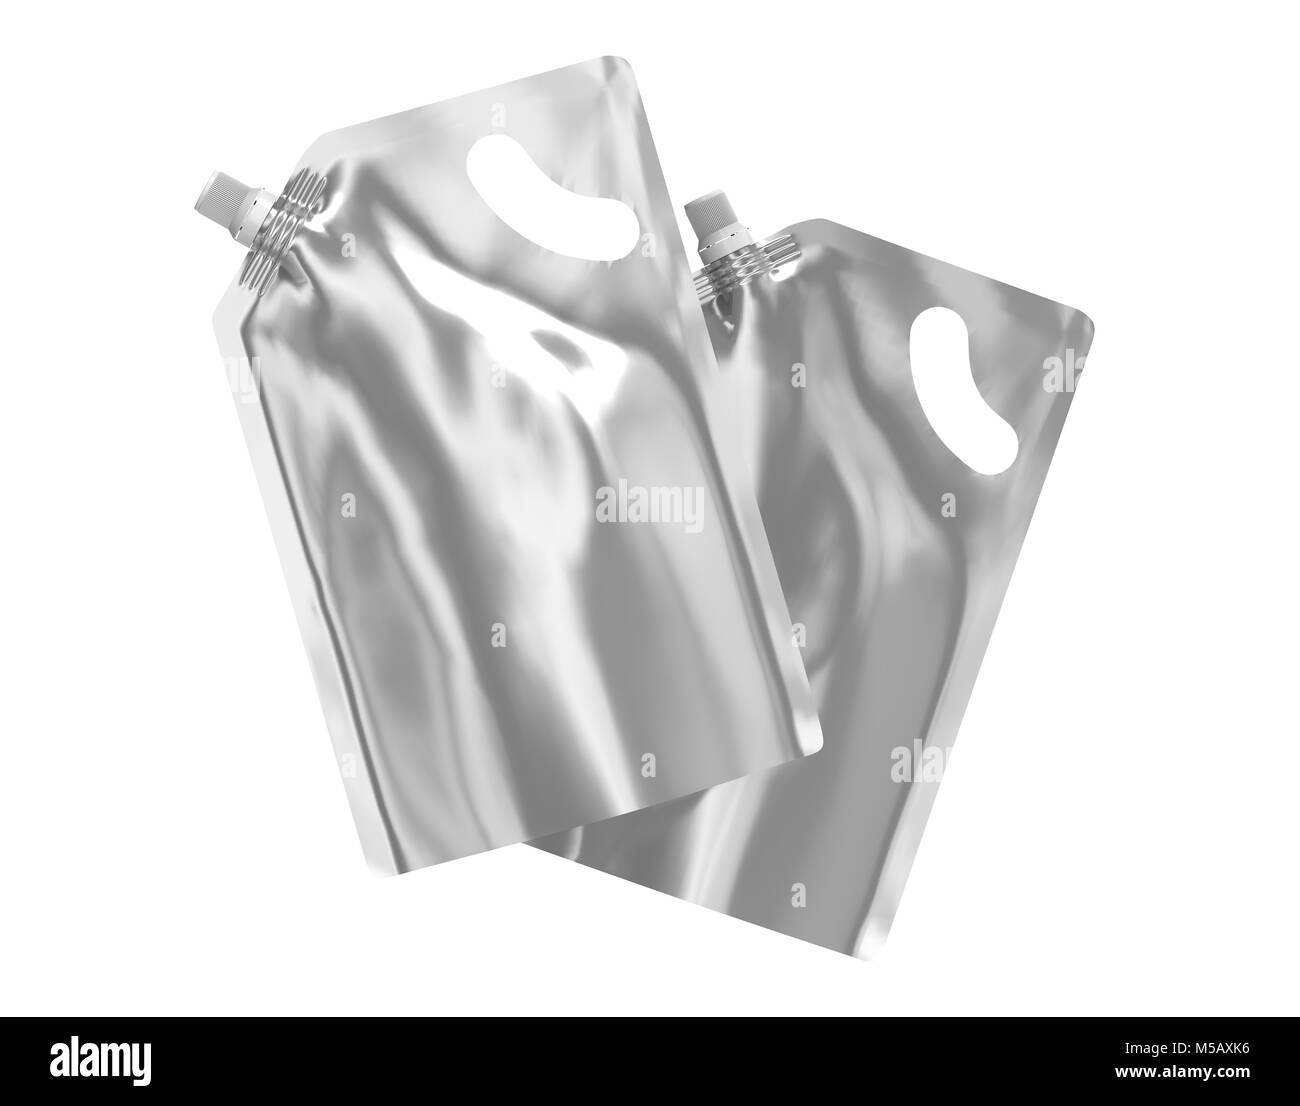 Detergente confezione di ricarica, 3d rendering argento stand-up sacchetto custodia mockup insieme con il cappuccio galleggianti in aria Foto Stock